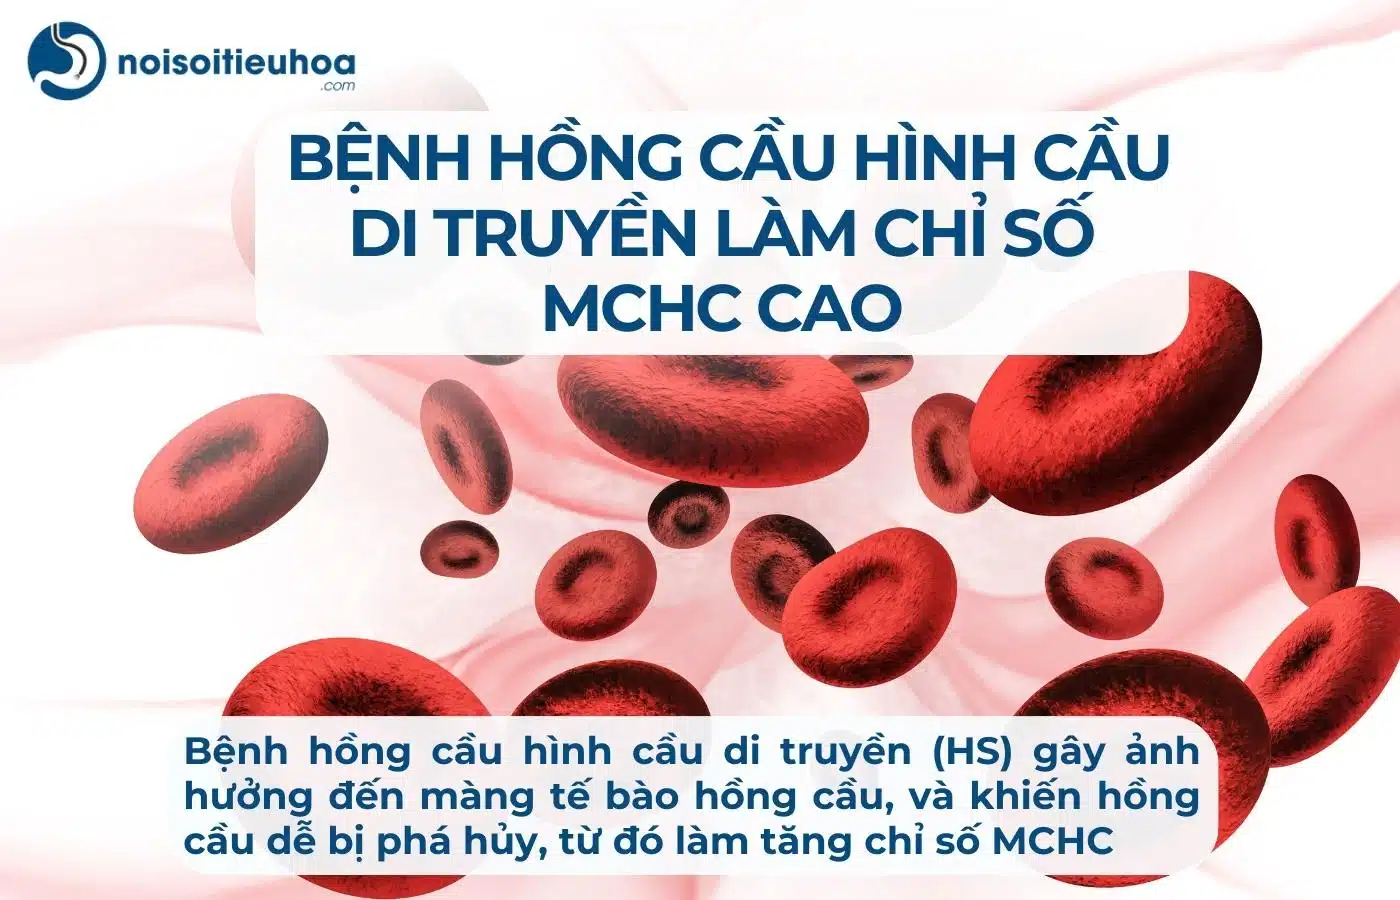 Bệnh hồng cầu hình cầu di truyền (HS) làm chỉ số MCHC tăng cao